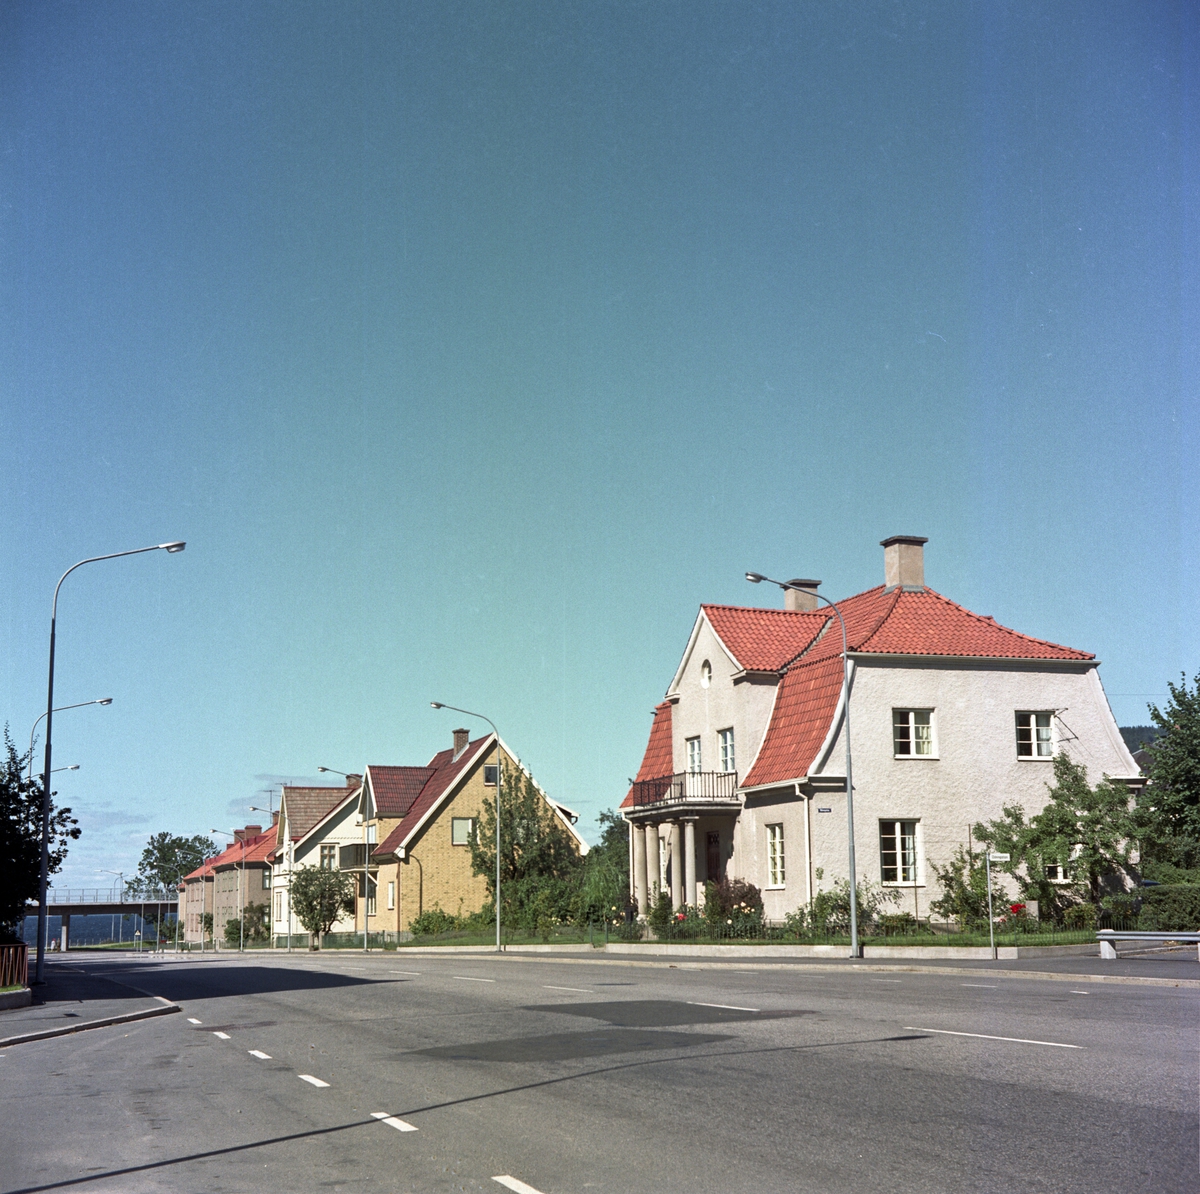 Bostadshus utmed Vättergatan i Huskvarna.